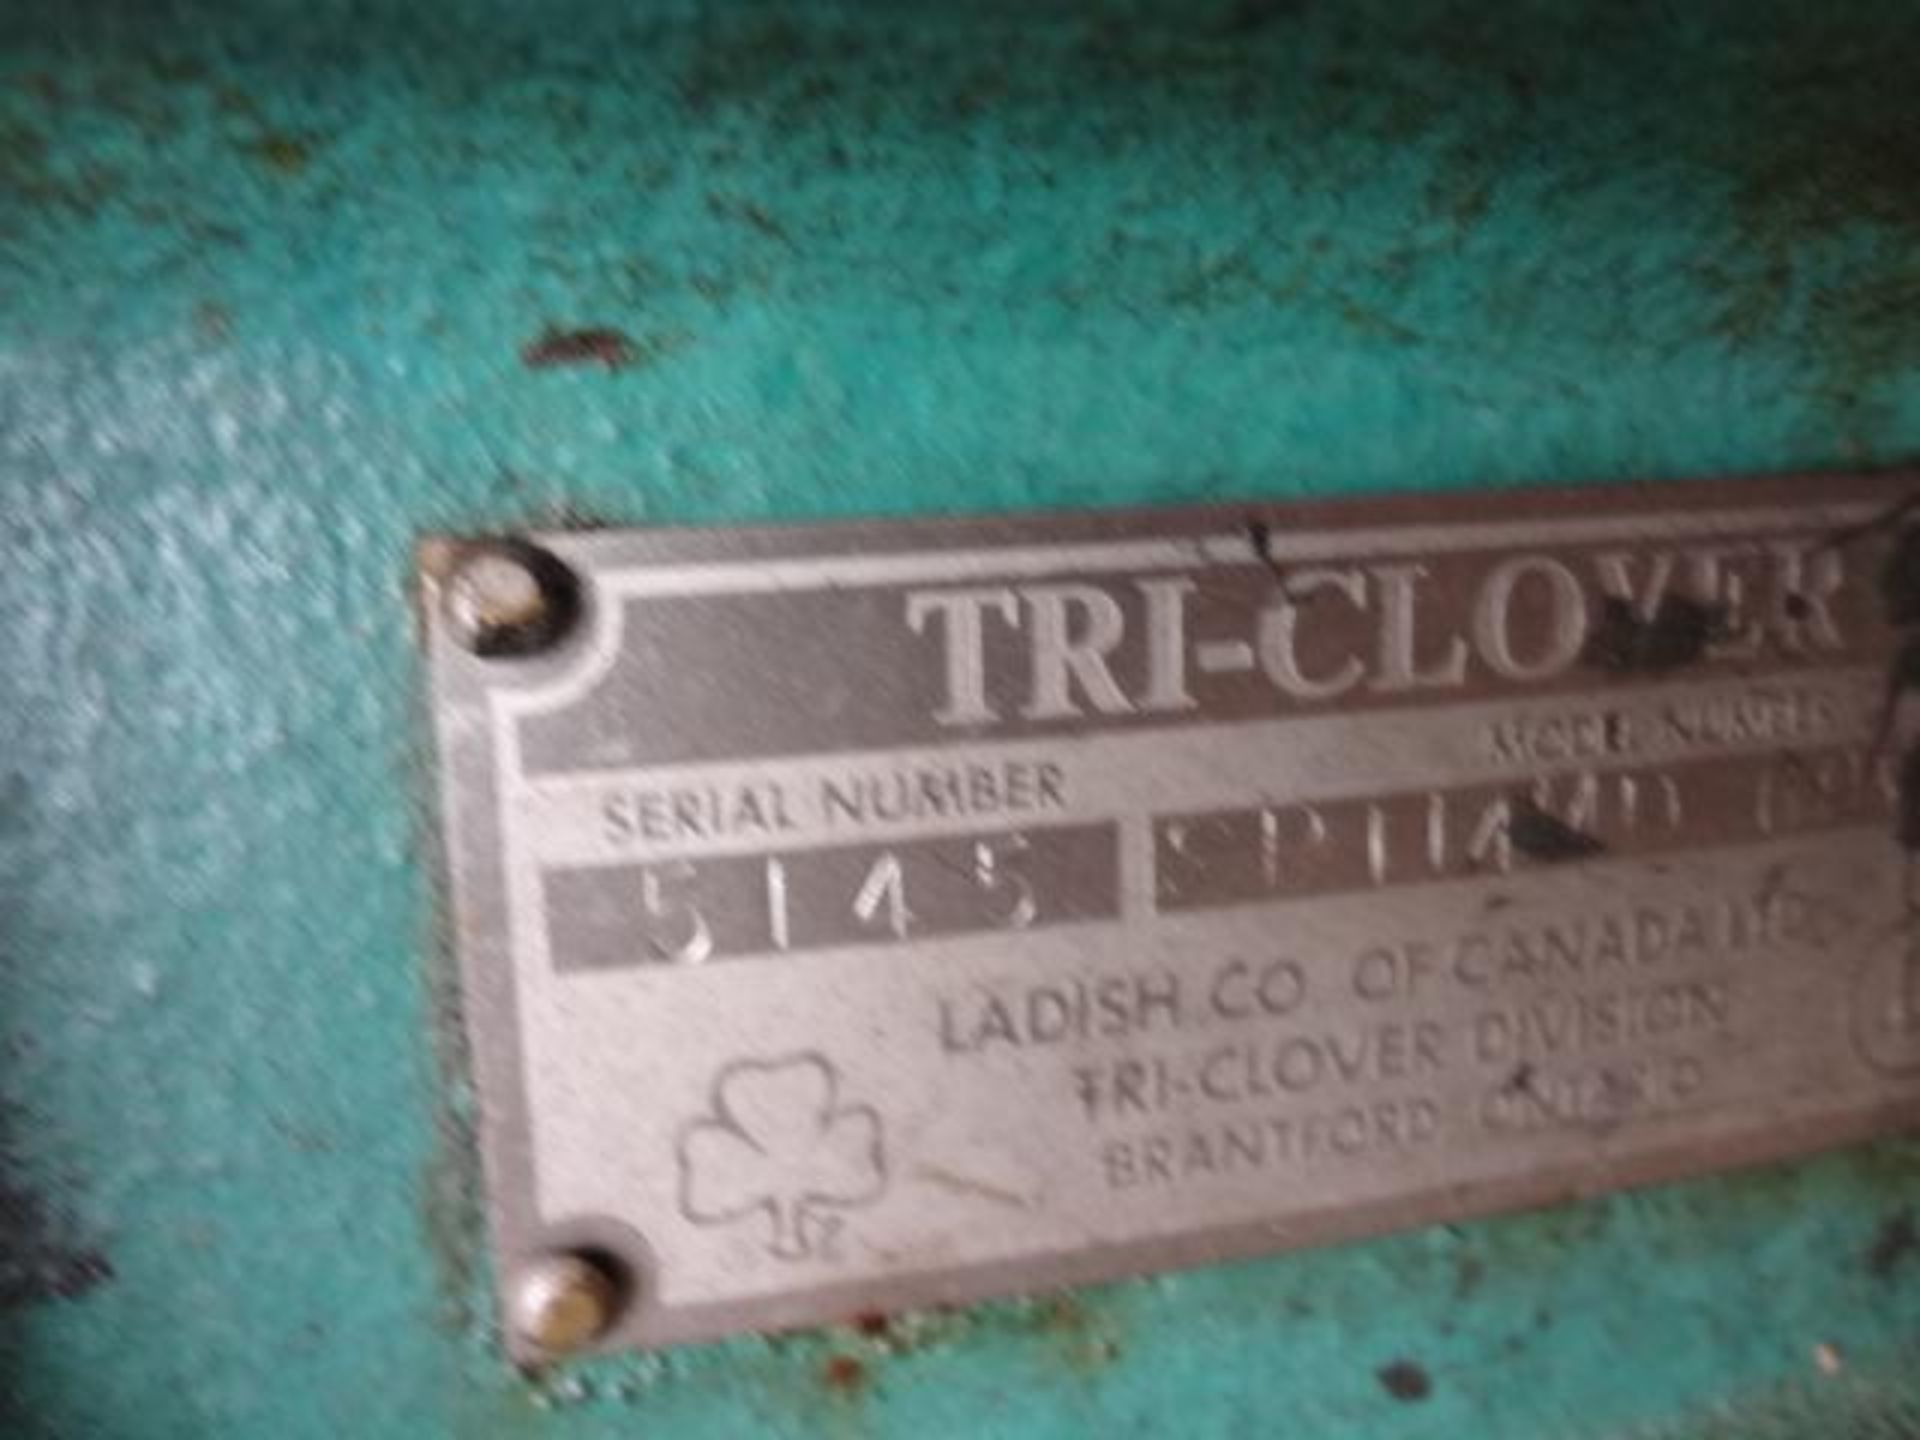 Pompe triclover - Triclover pump - Bild 2 aus 5